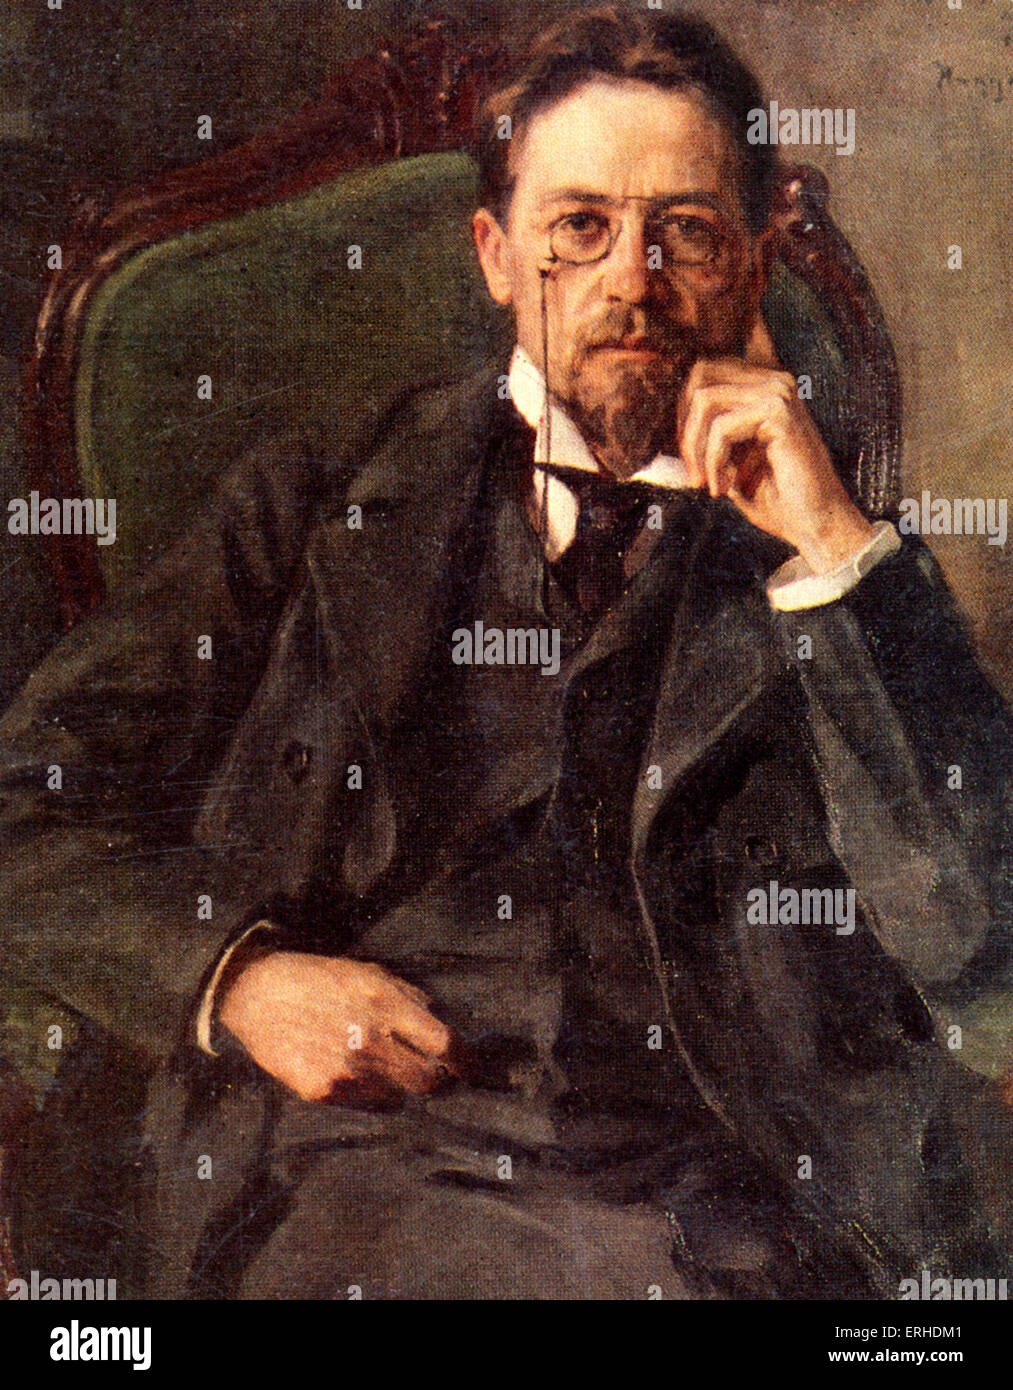 Anton Tchekhov - portrait. Dramaturge russe / dramaturge ; 17 janvier 1860 - 2 juillet 1904. Banque D'Images